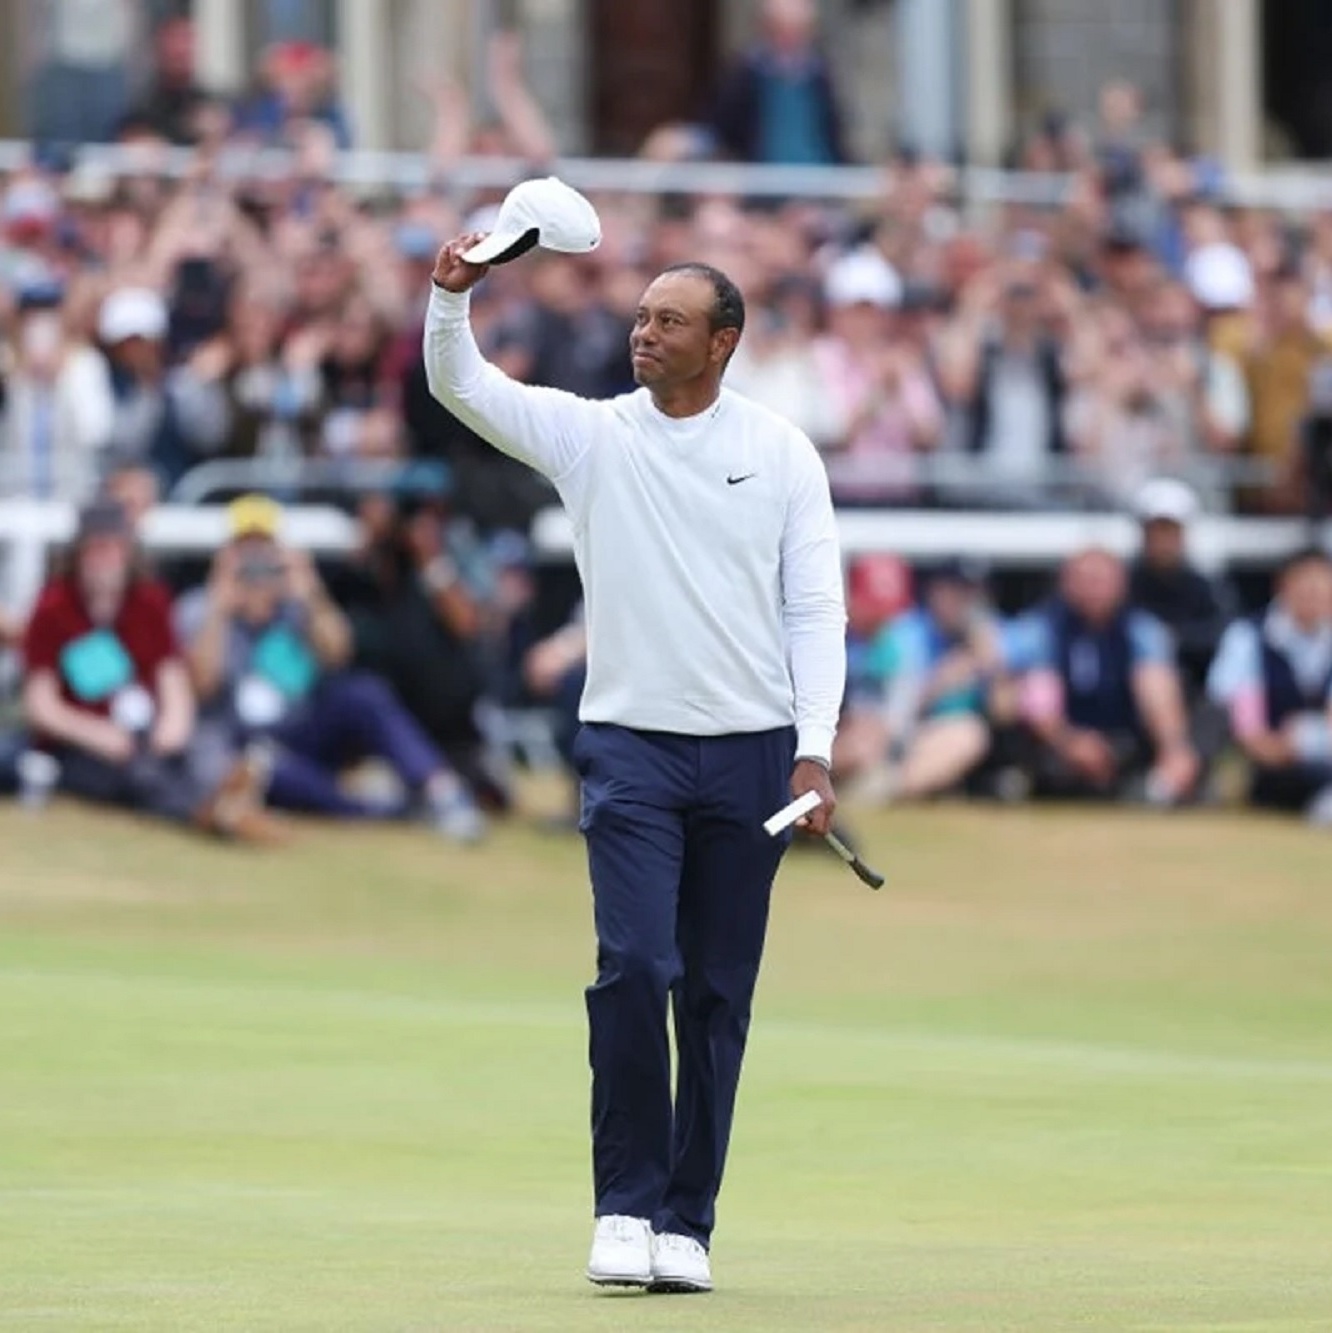 Golfe: Perto da aposentadoria, Tiger Woods é aplaudido e se emociona